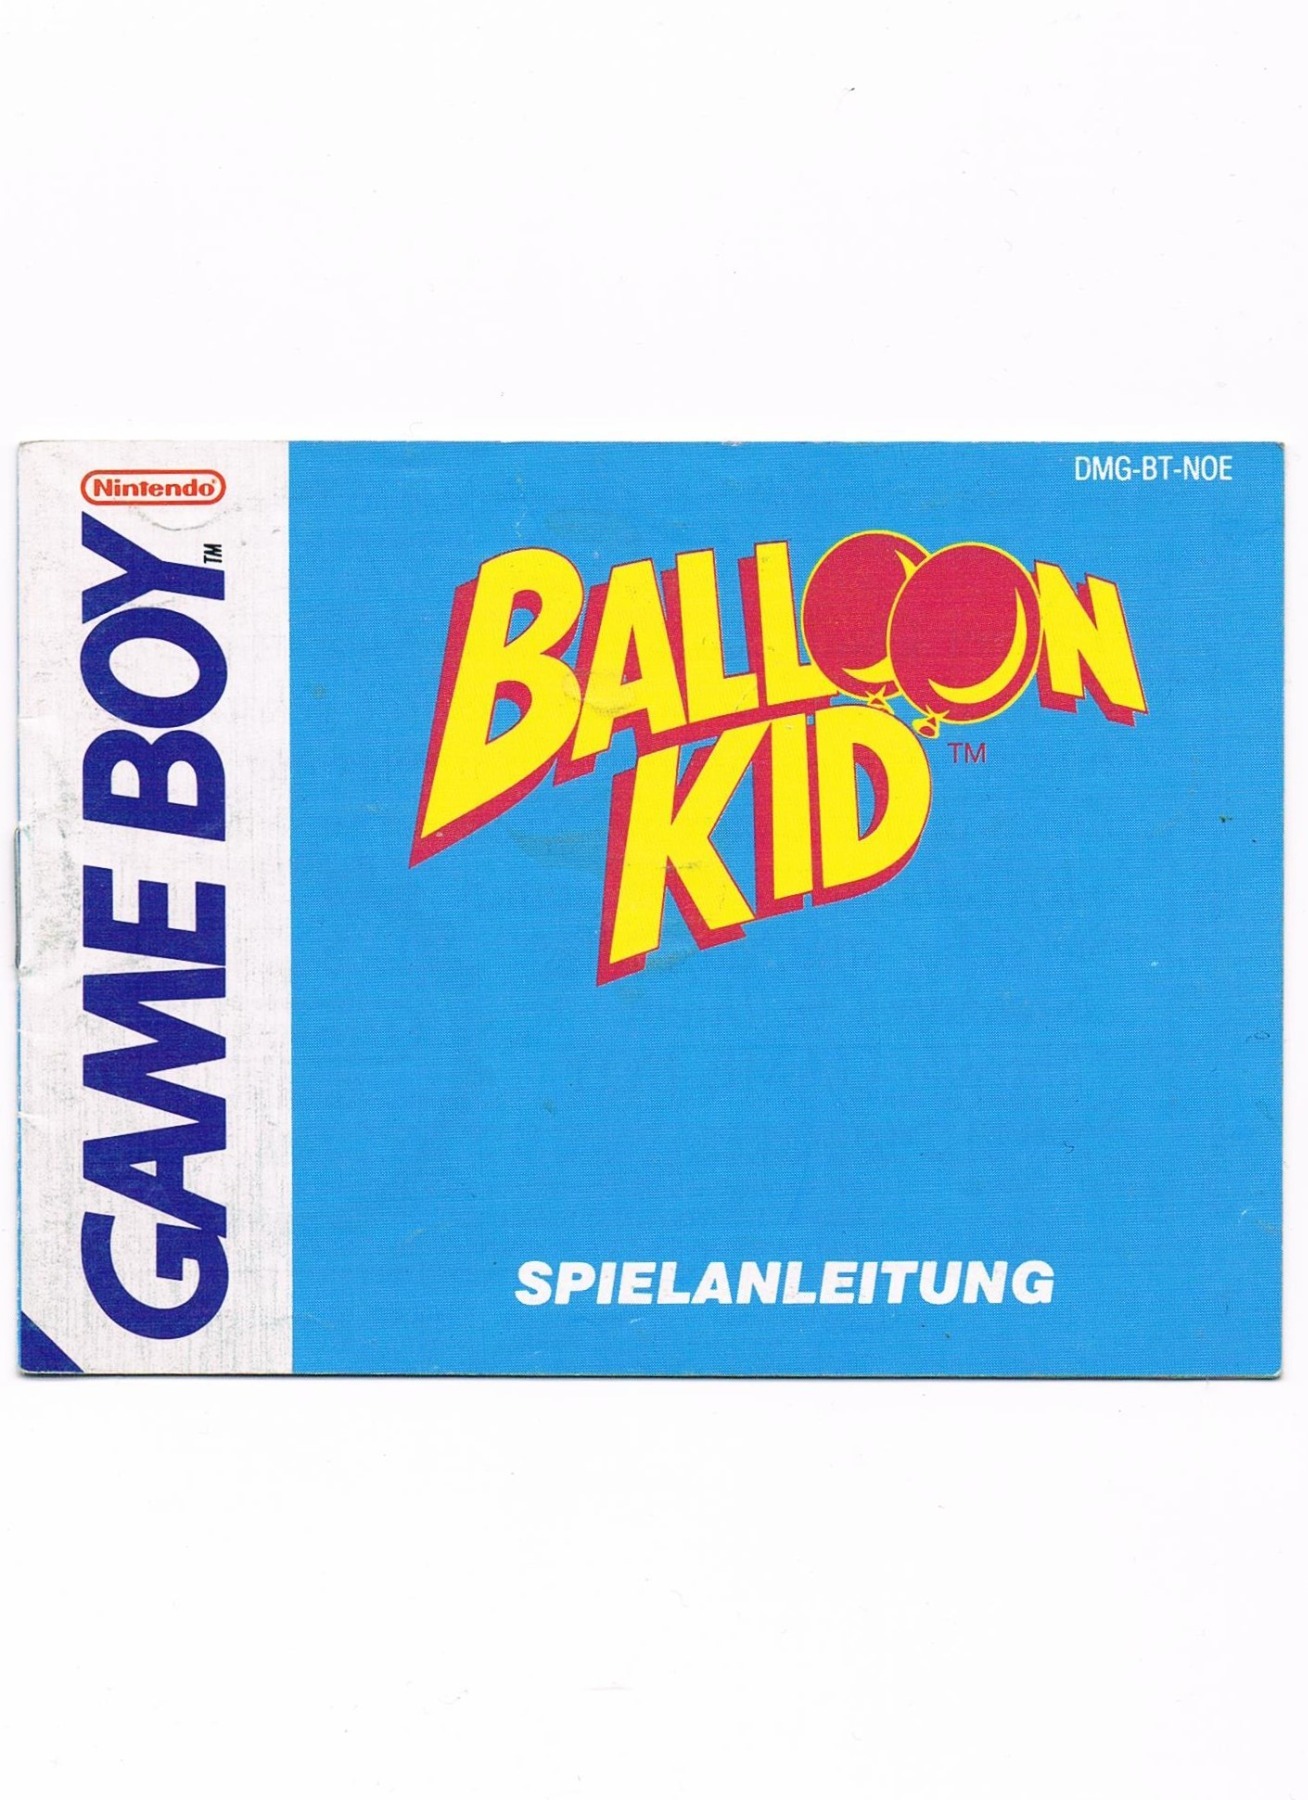 Balloon Kid - Bedienungsanleitung / Spielanleitung